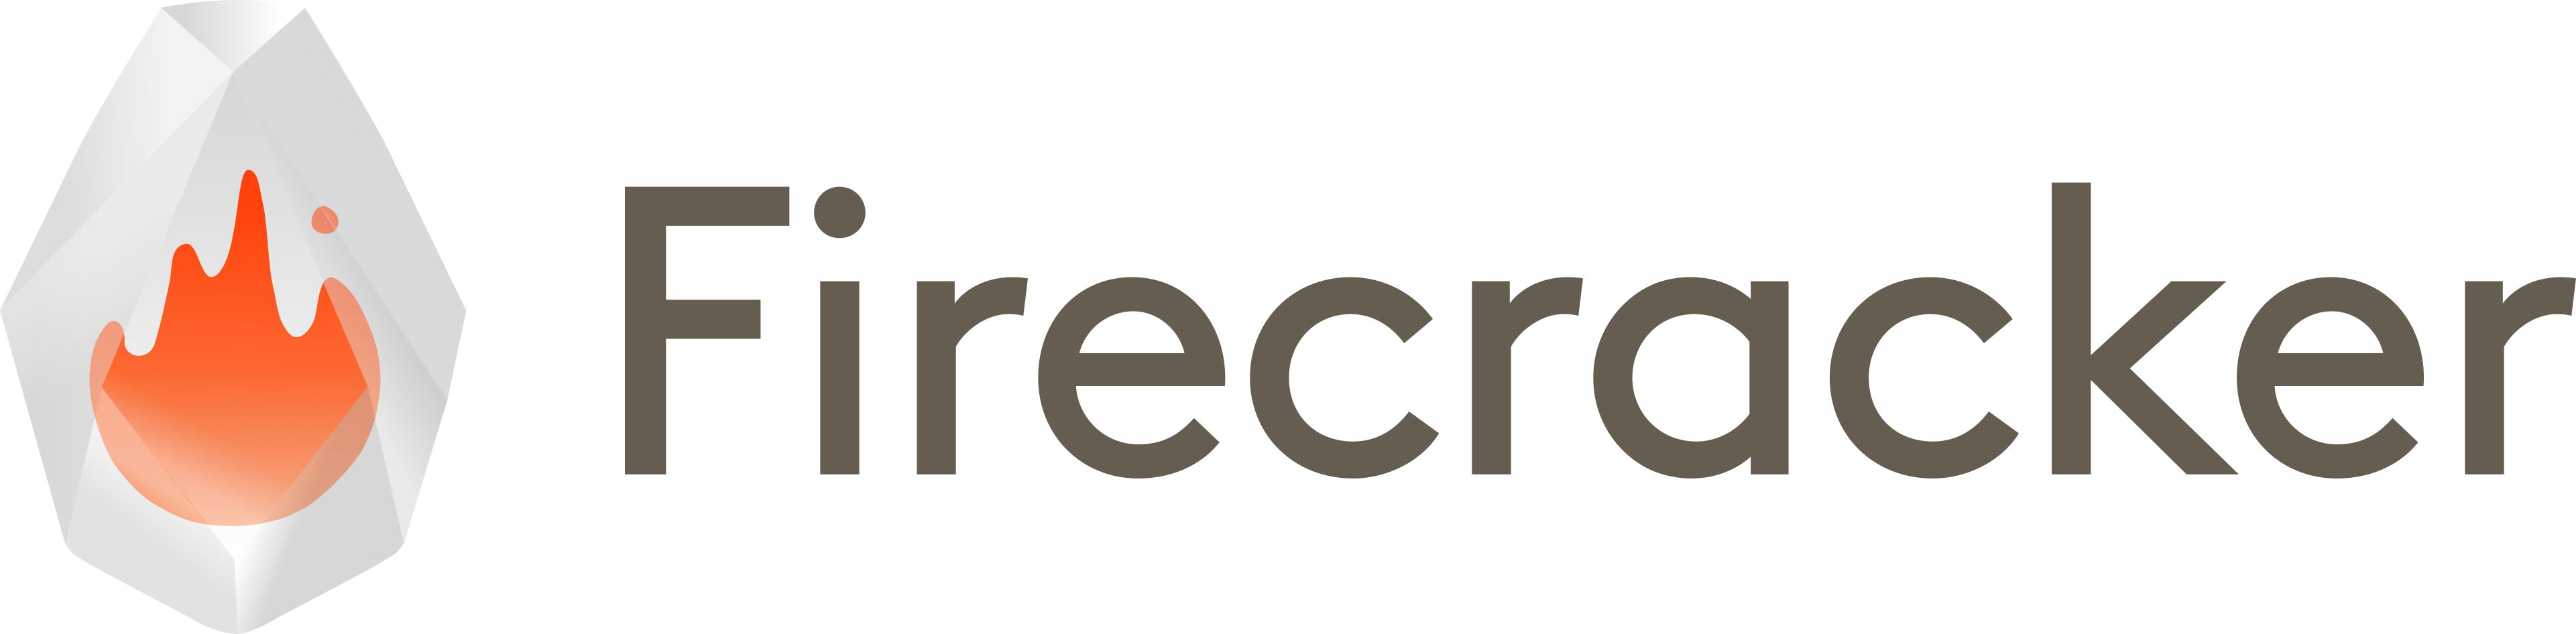 Firecracker Logo Title